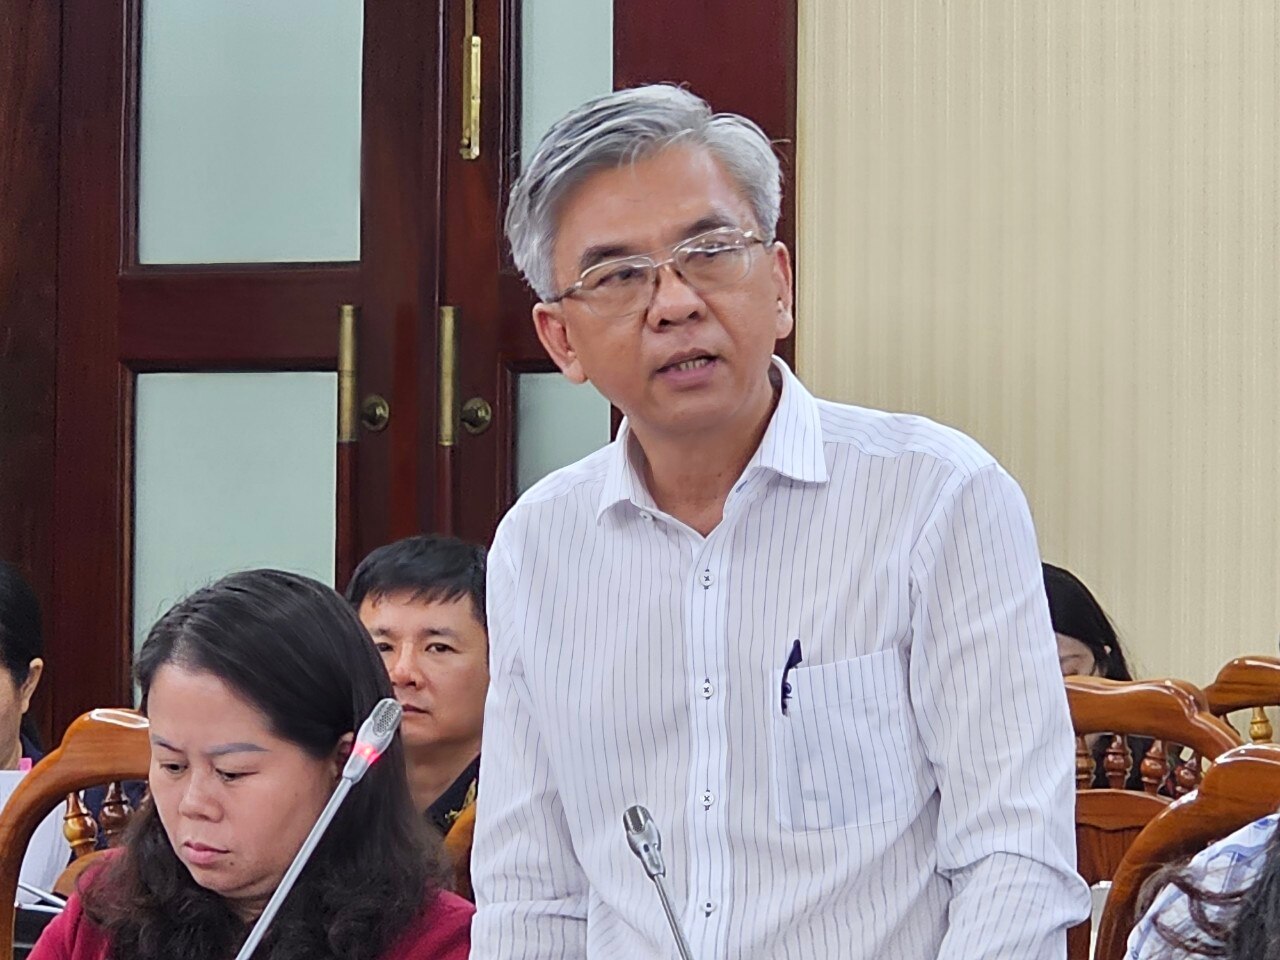 Lãnh đạo tỉnh Bà Rịa-Vũng Tàu đối thoại với 200 doanh nghiệp, nhà đầu tư   - Ảnh 2.